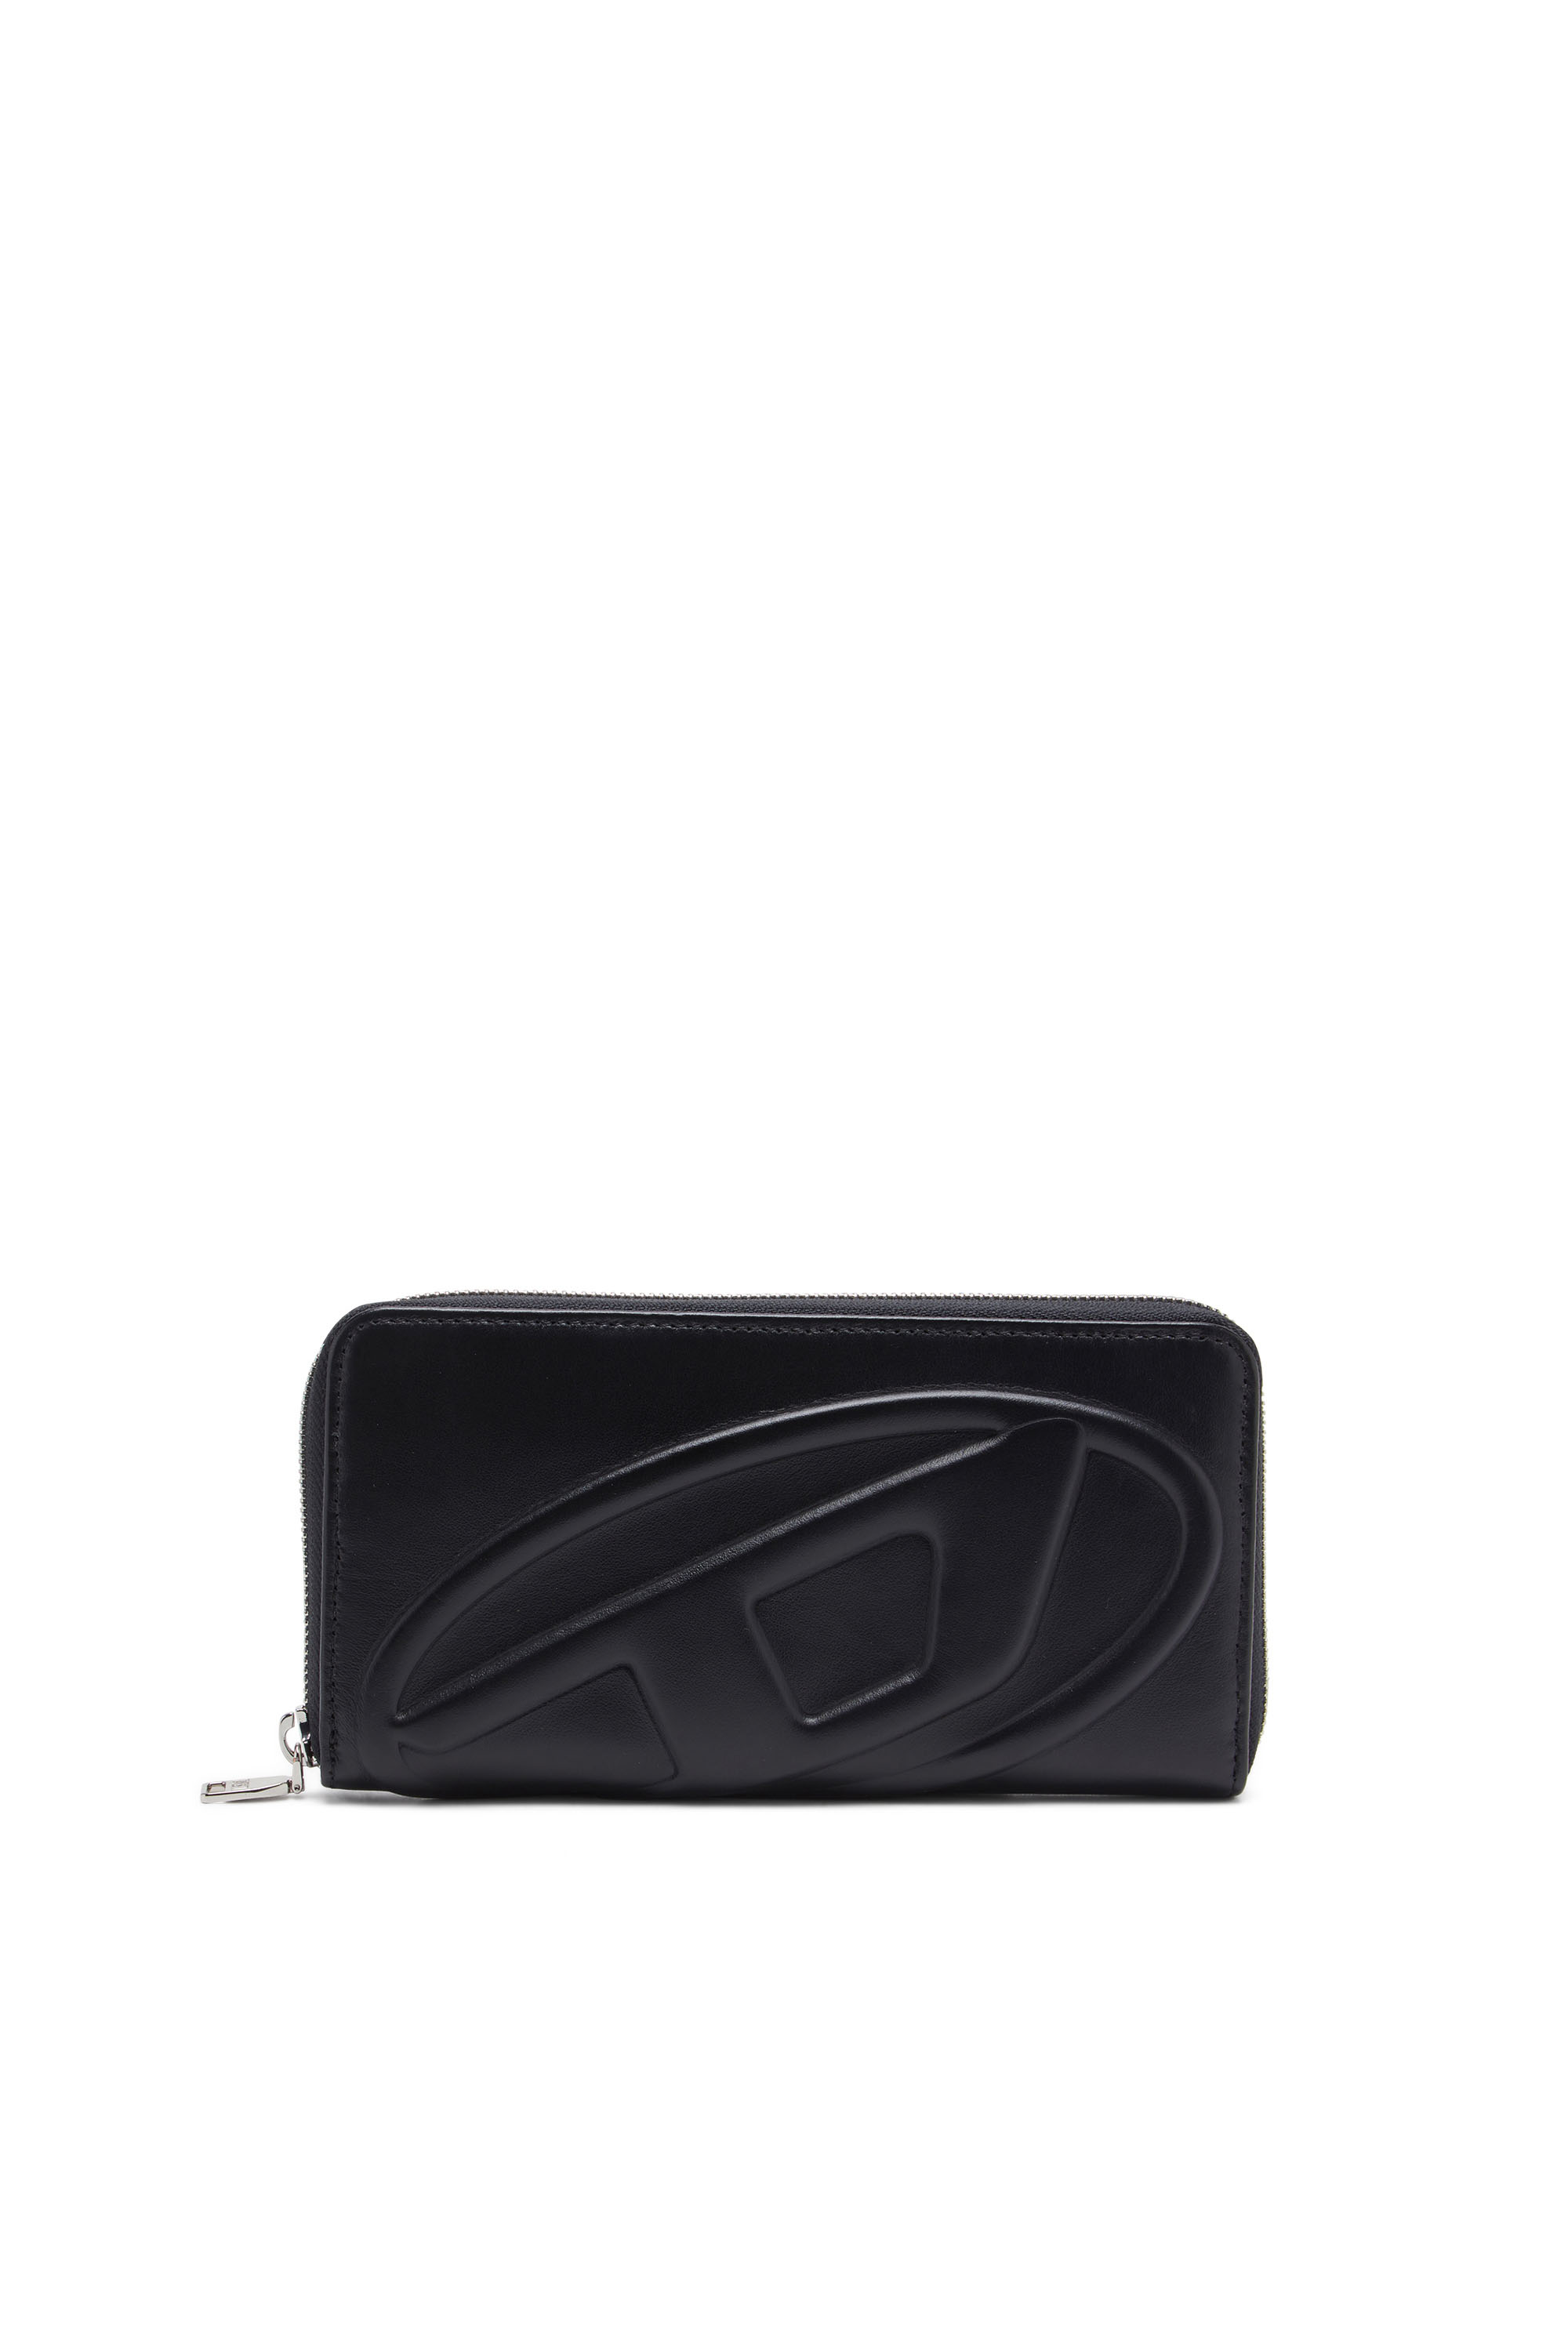 Diesel - Long zip wallet with embossed logo - Zip-Round Wallets - Woman - Black